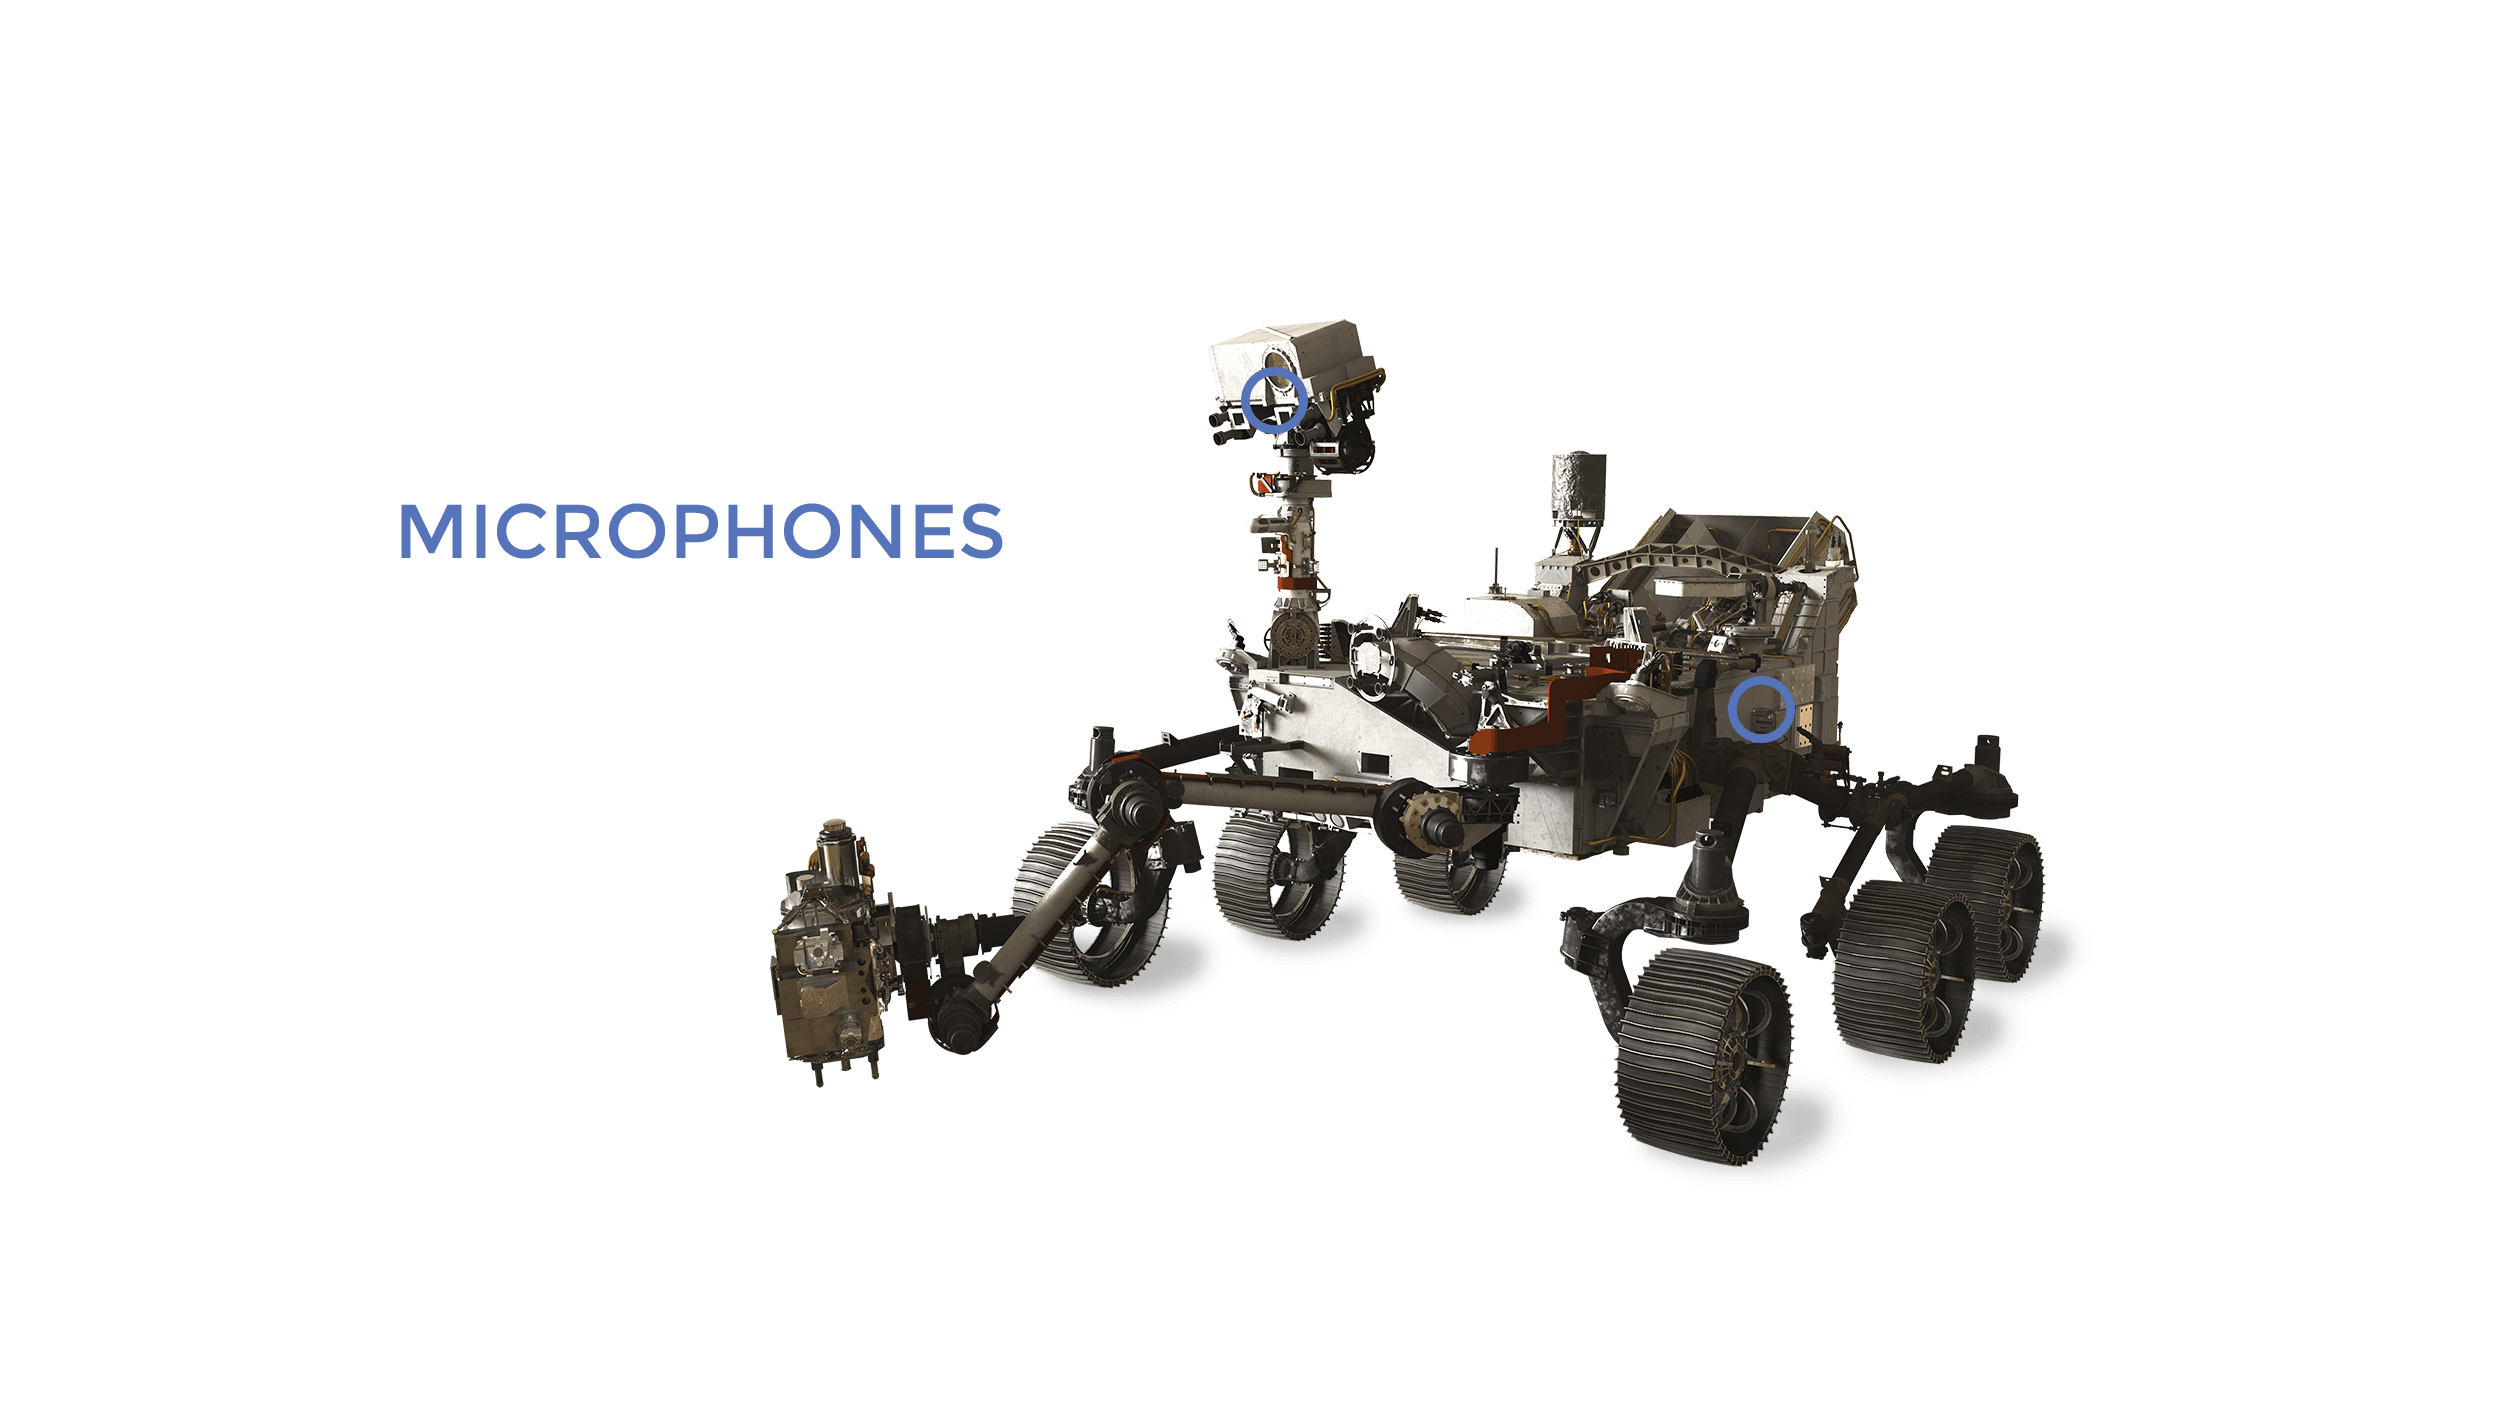 Mars 2020 microphones